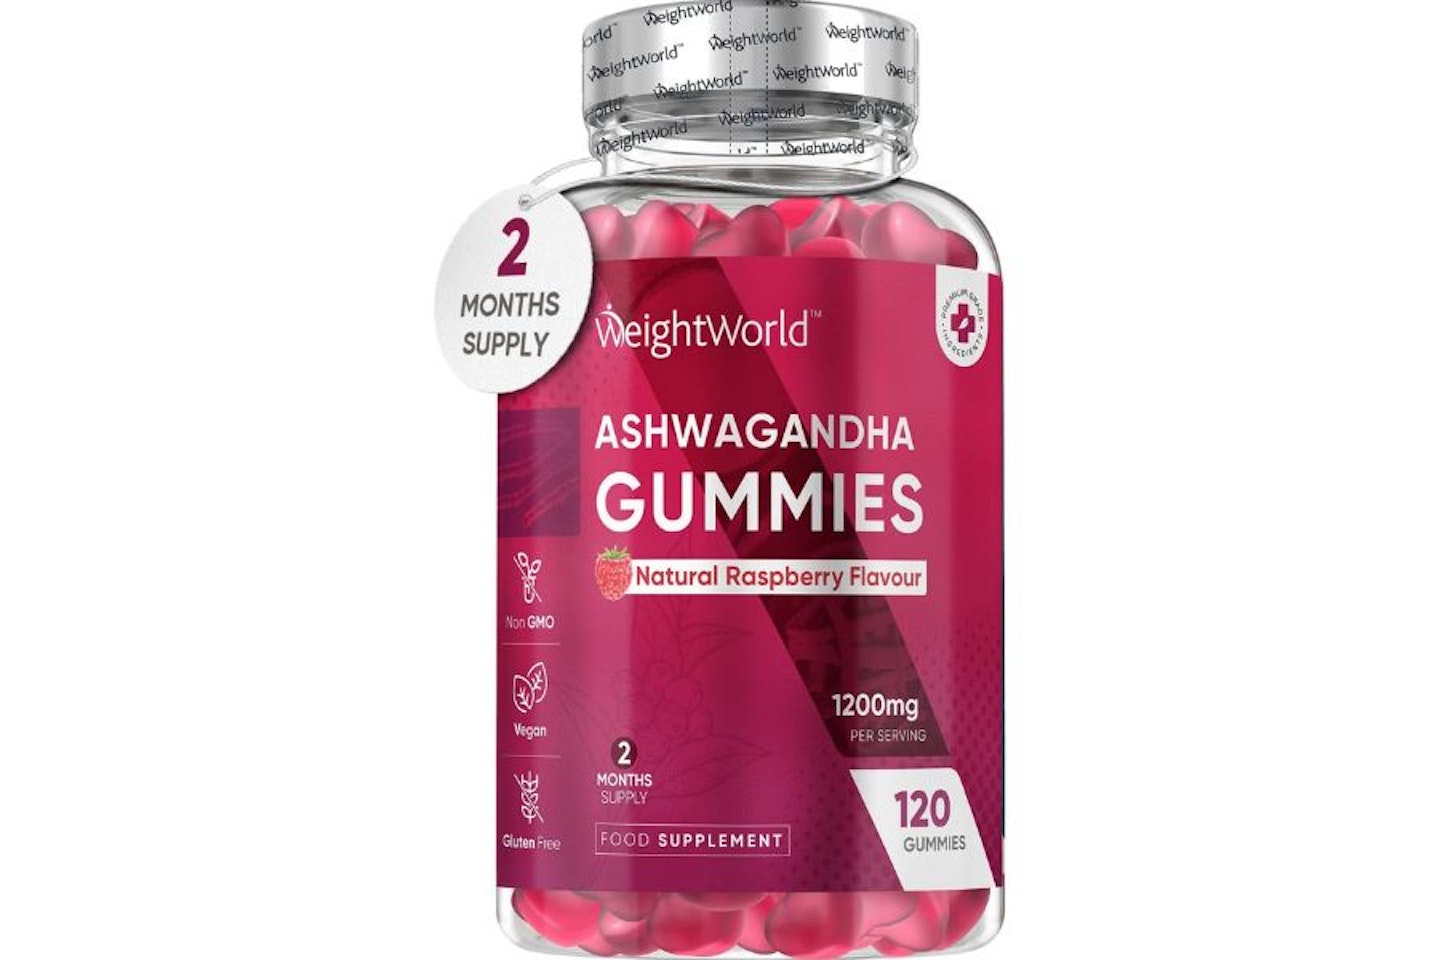 WeightWorld Ashwagandha Gummies - best ashwagandha gummies